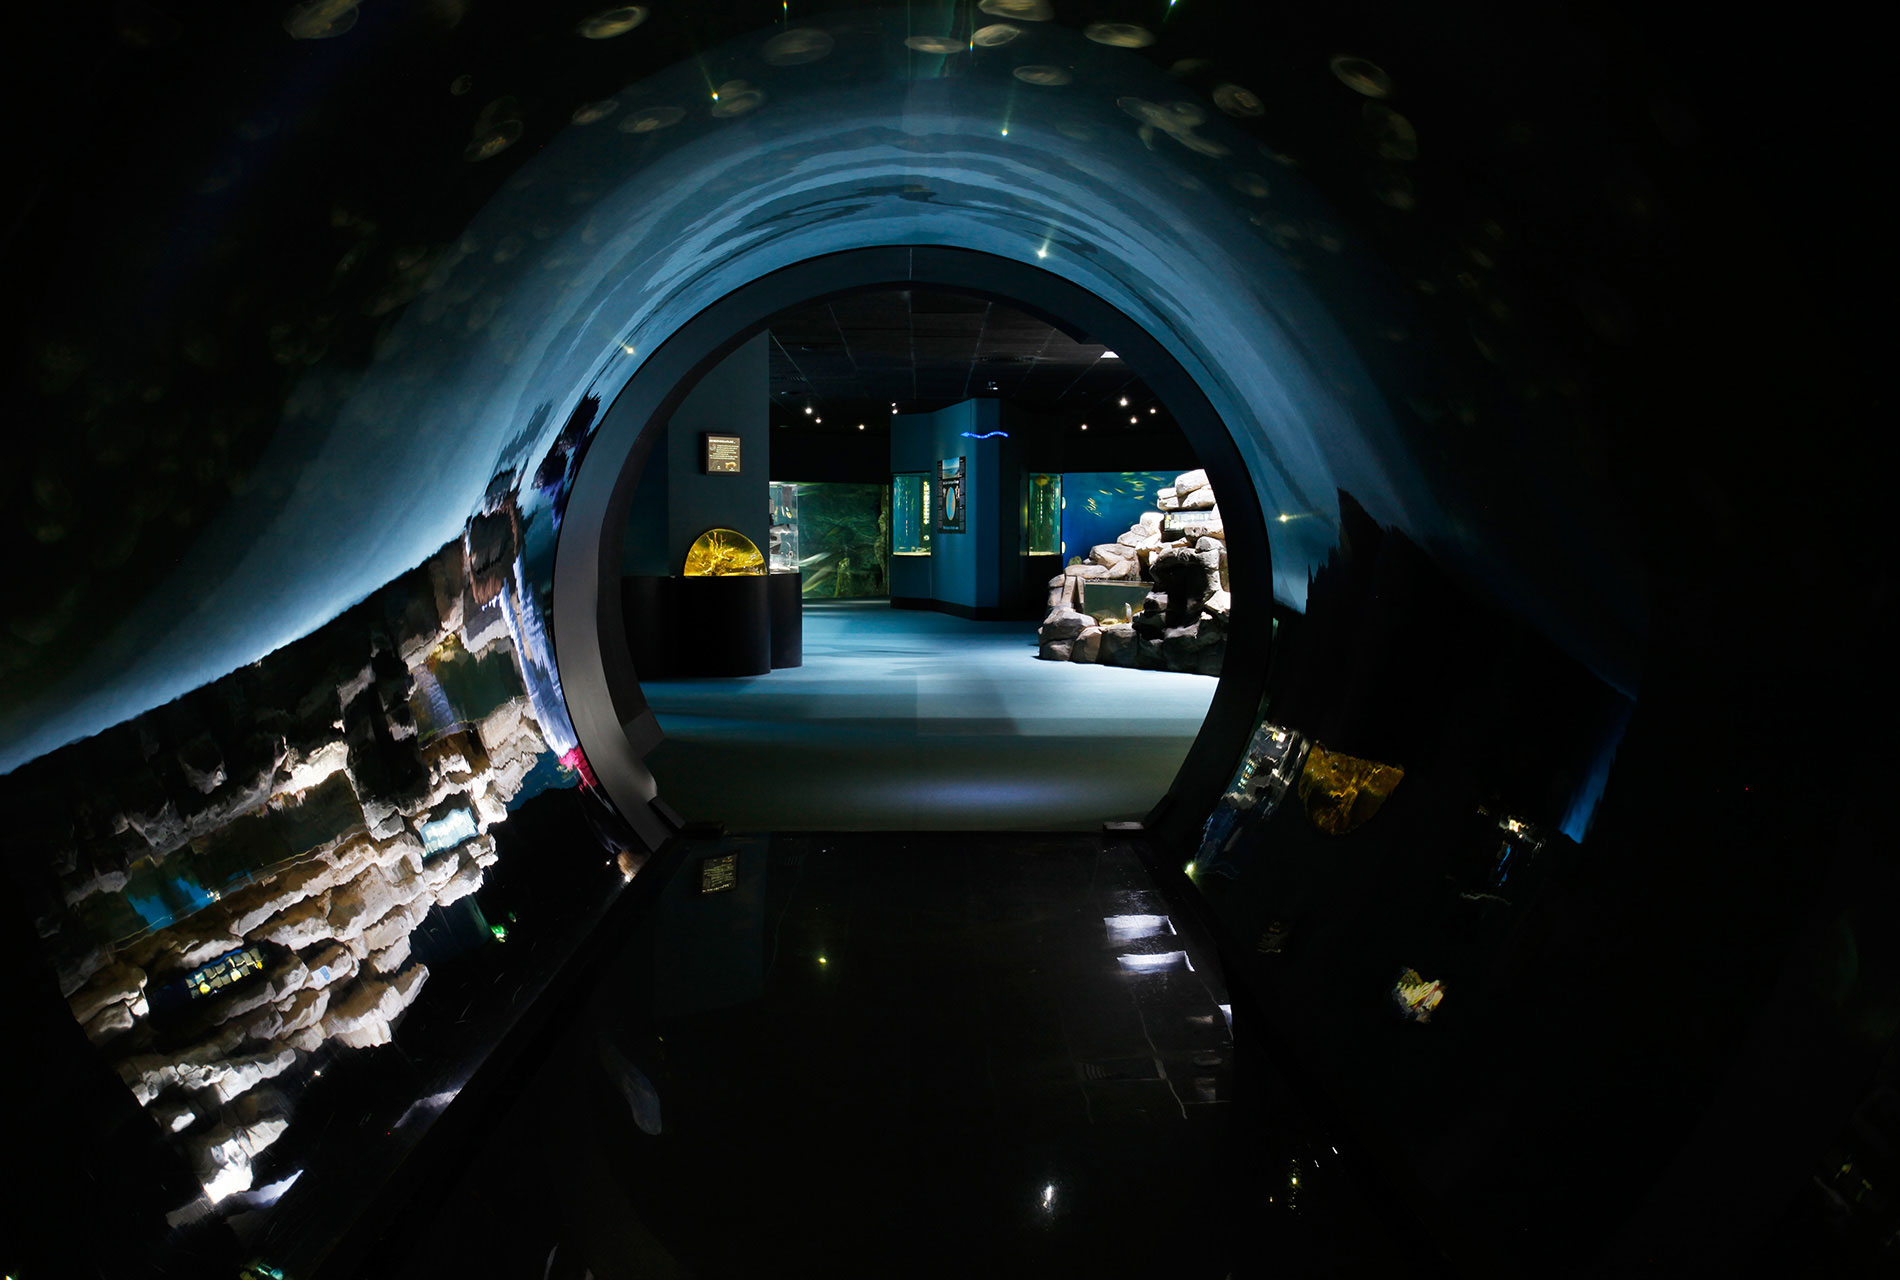 aquarium clipart tunnel